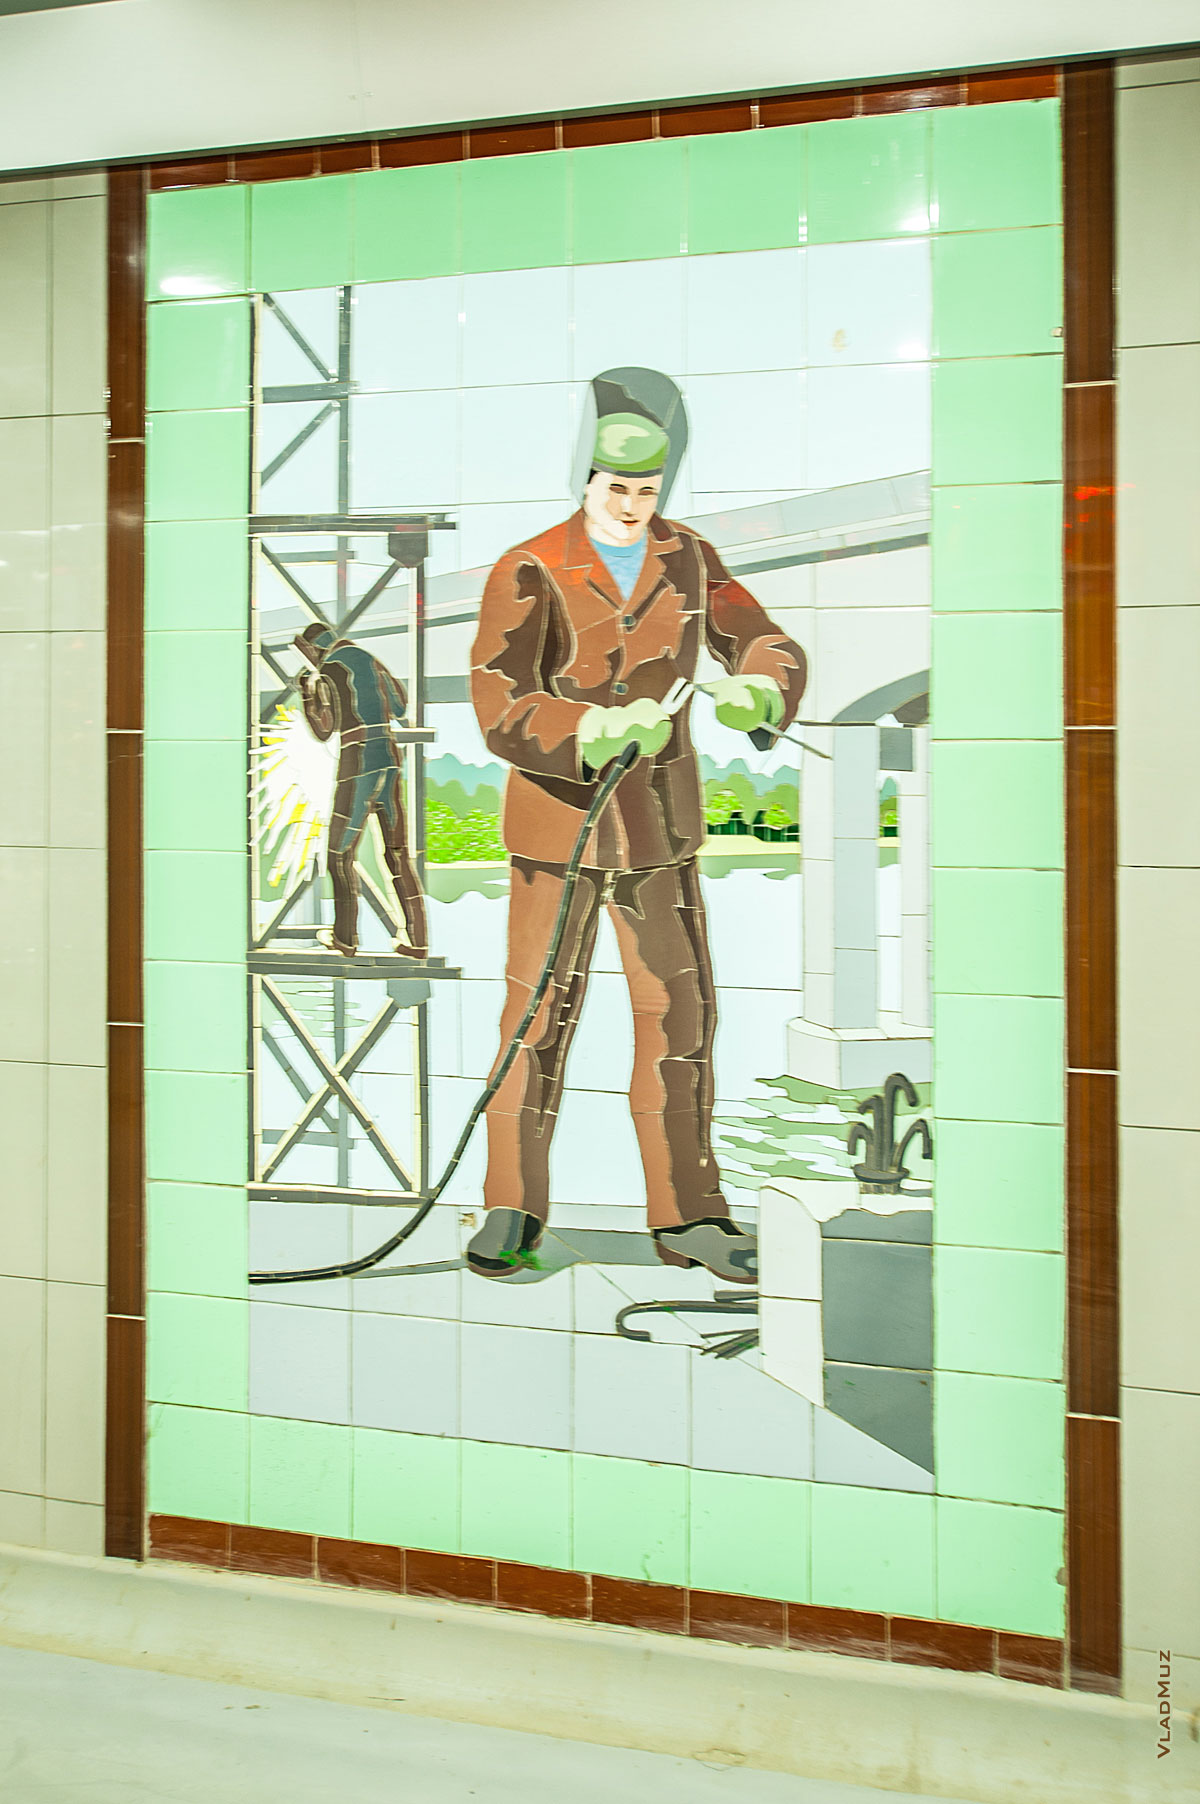 Советская мозаика в подземном переходе Ростова-на-Дону